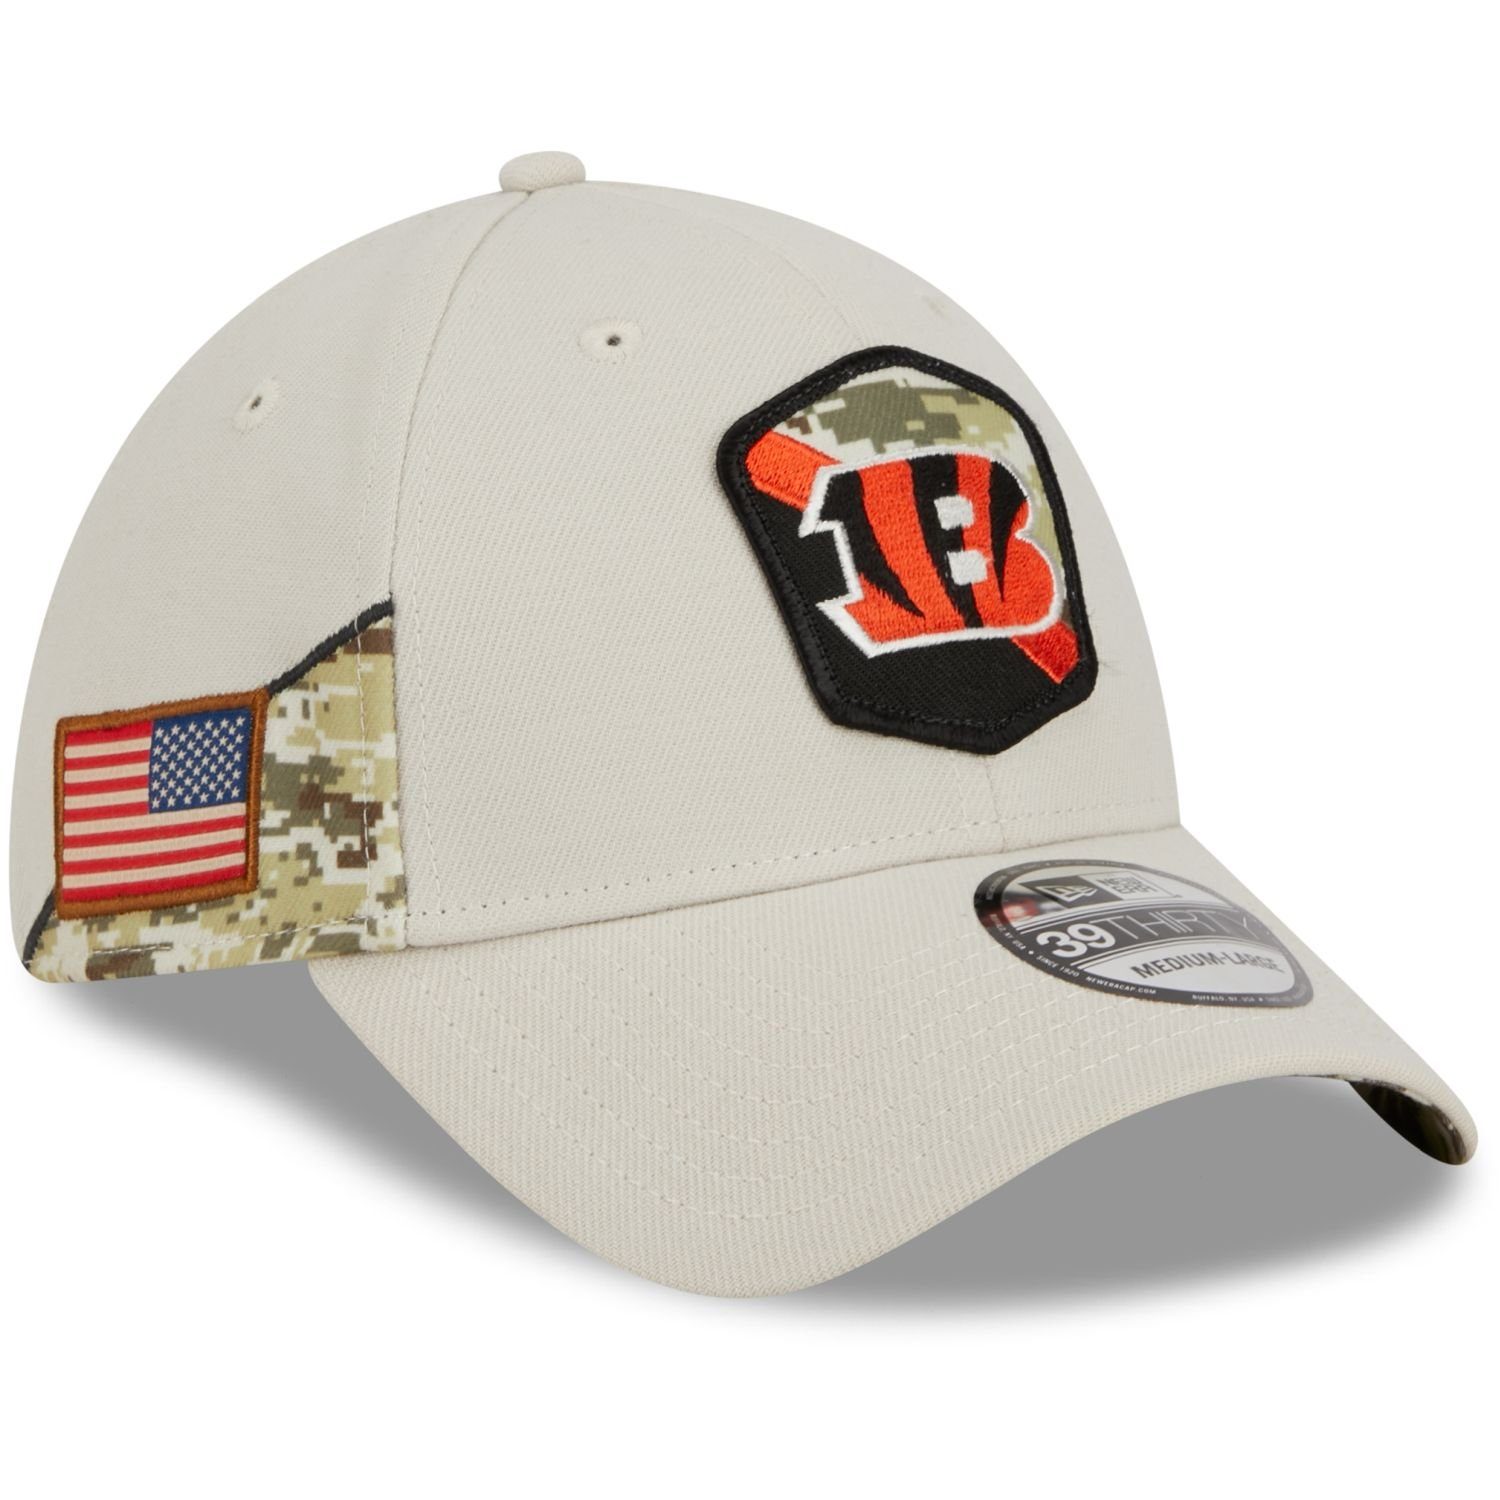 New Era Flex Cap 39Thirty StretchFit NFL Salute to Service Cincinnati Bengals | Flex Caps